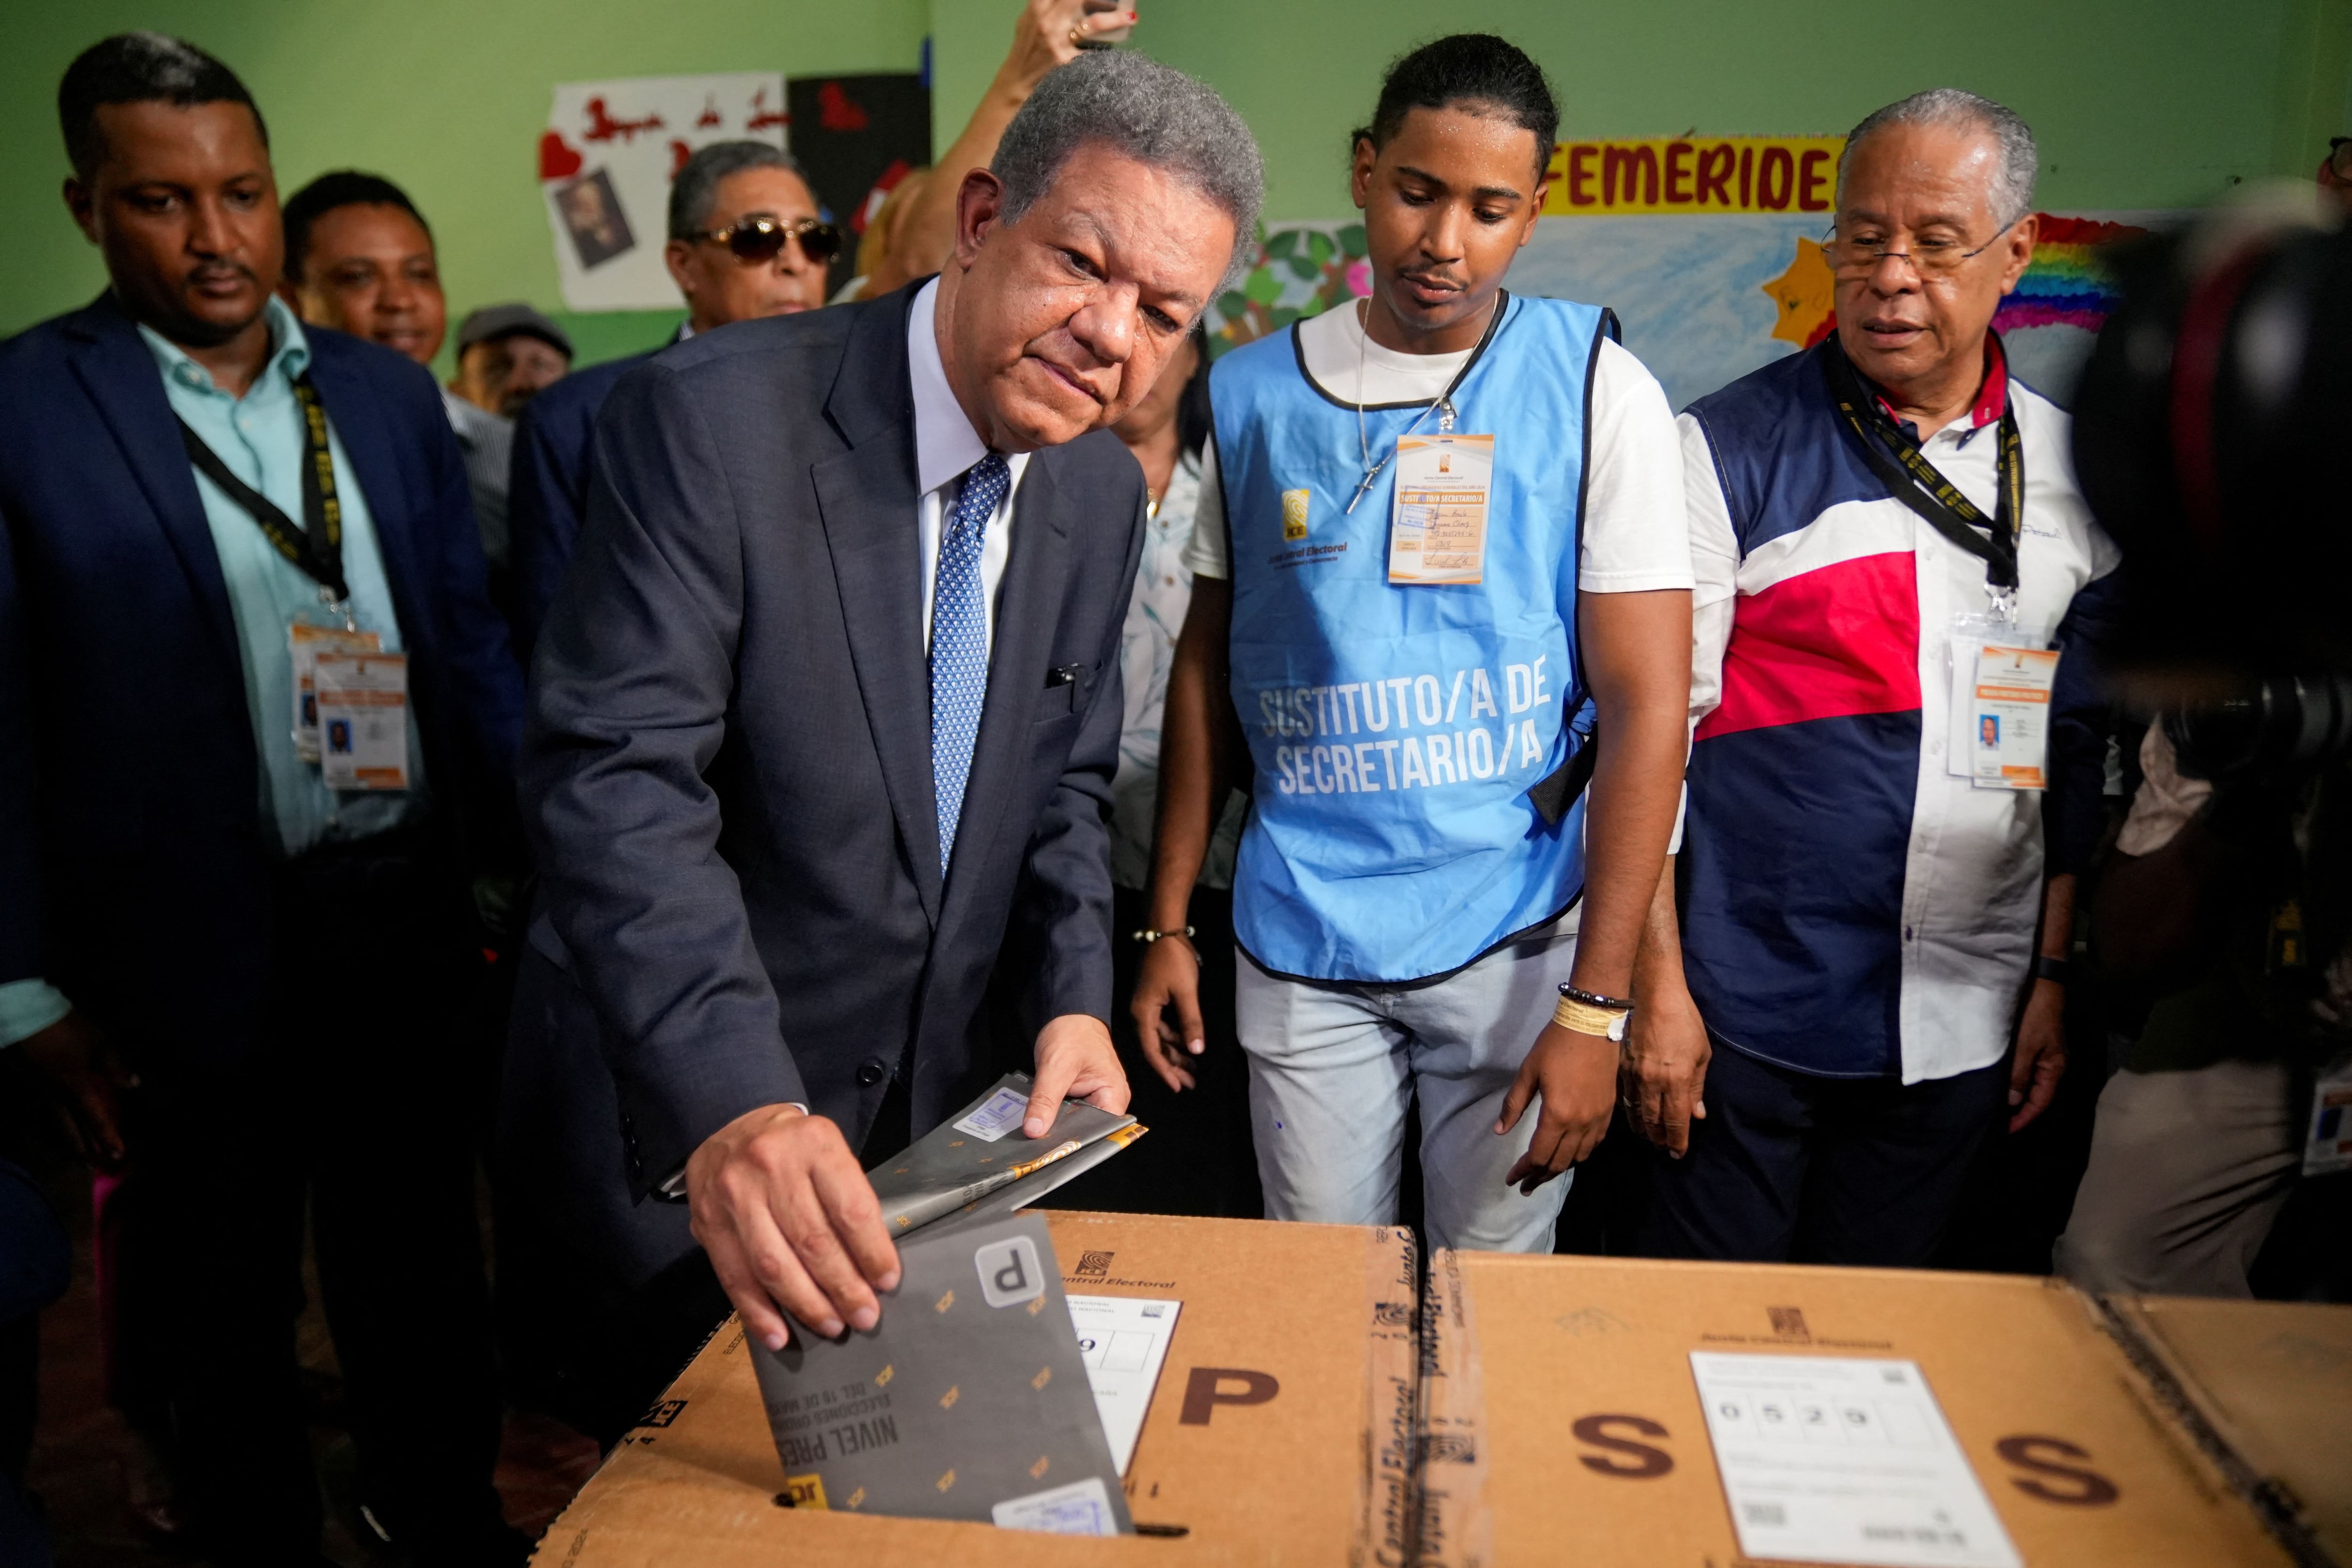 El candidato presidencial del partido Fuerza Popular Leonel Fernández vota el día de las elecciones presidenciales en Santo Domingo, República Dominicana, da 19 de mayo de 2024. REUTERS/Fran Afonso